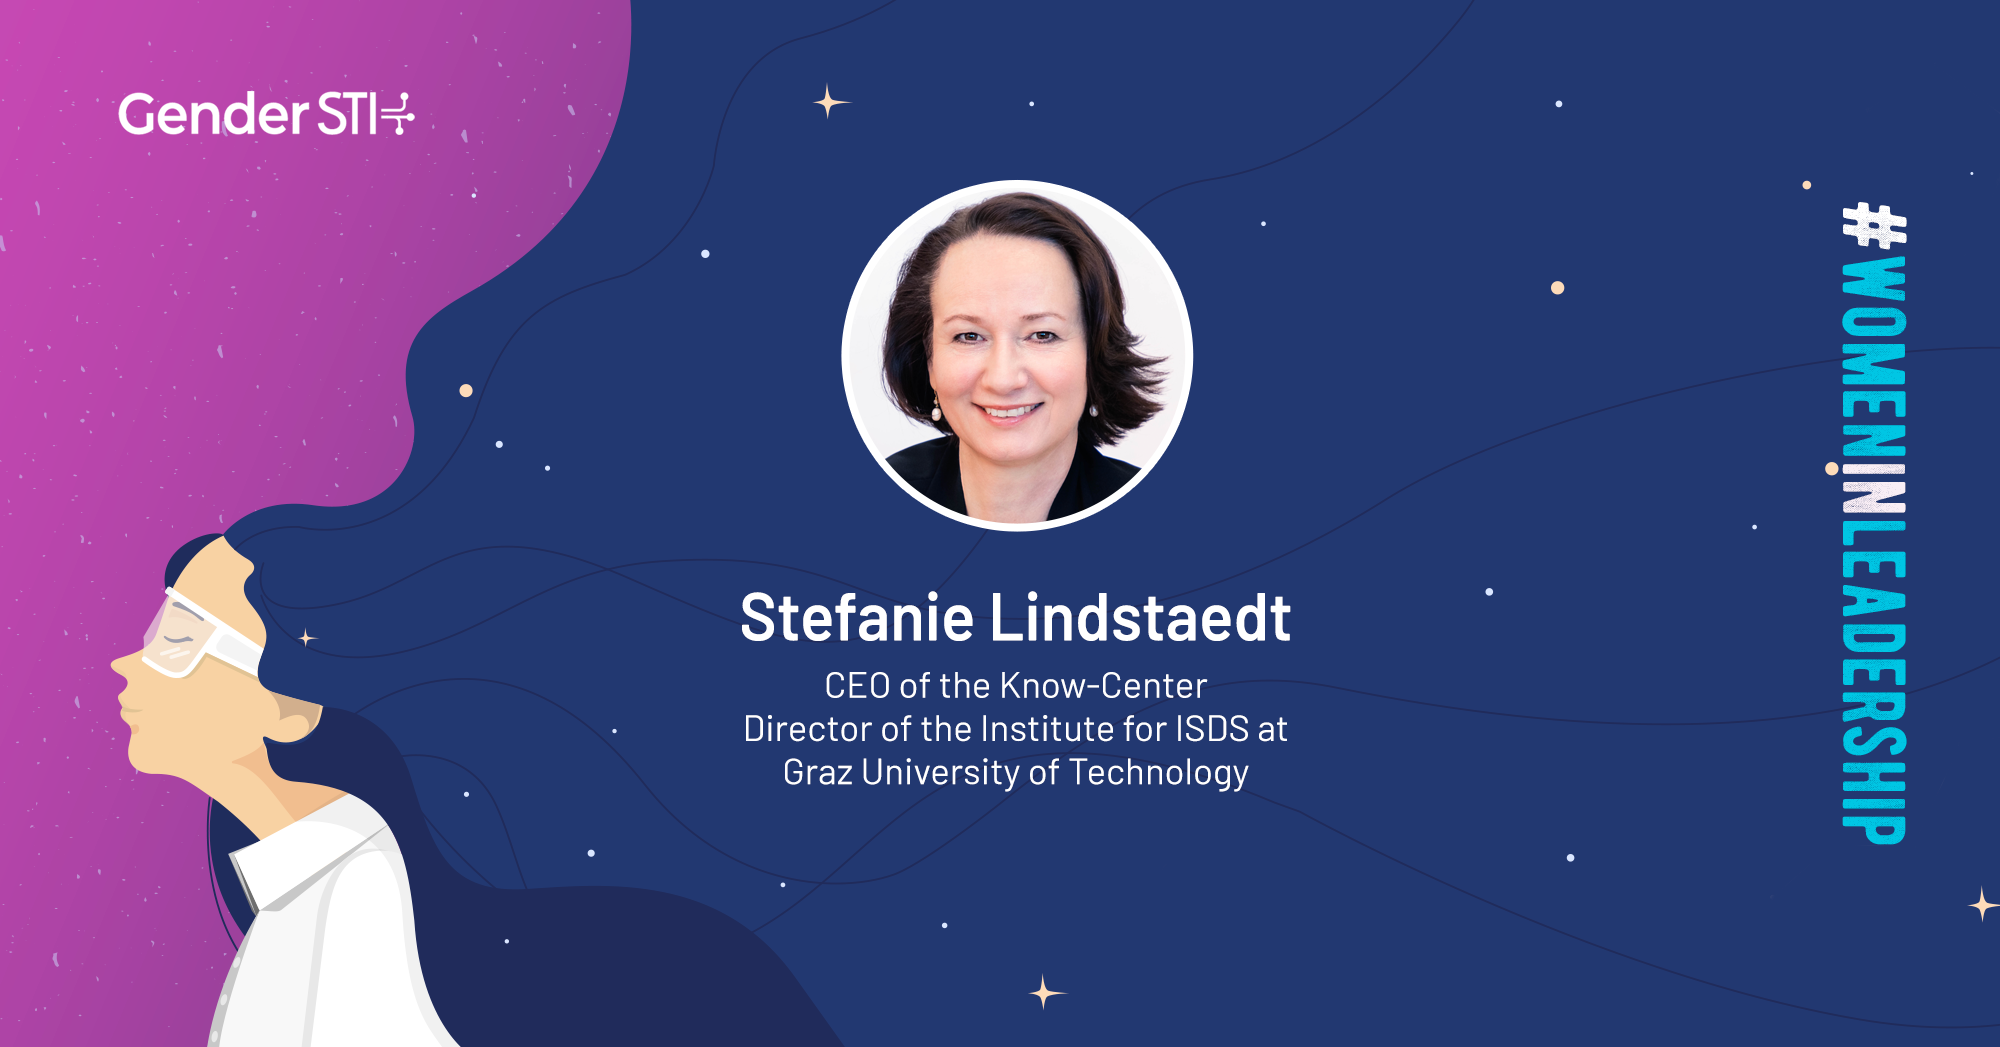 Stefanie Lindstaedt, CEO of Know-Center Graz, is one of Gender STI's #WomenInLeadership nominees.